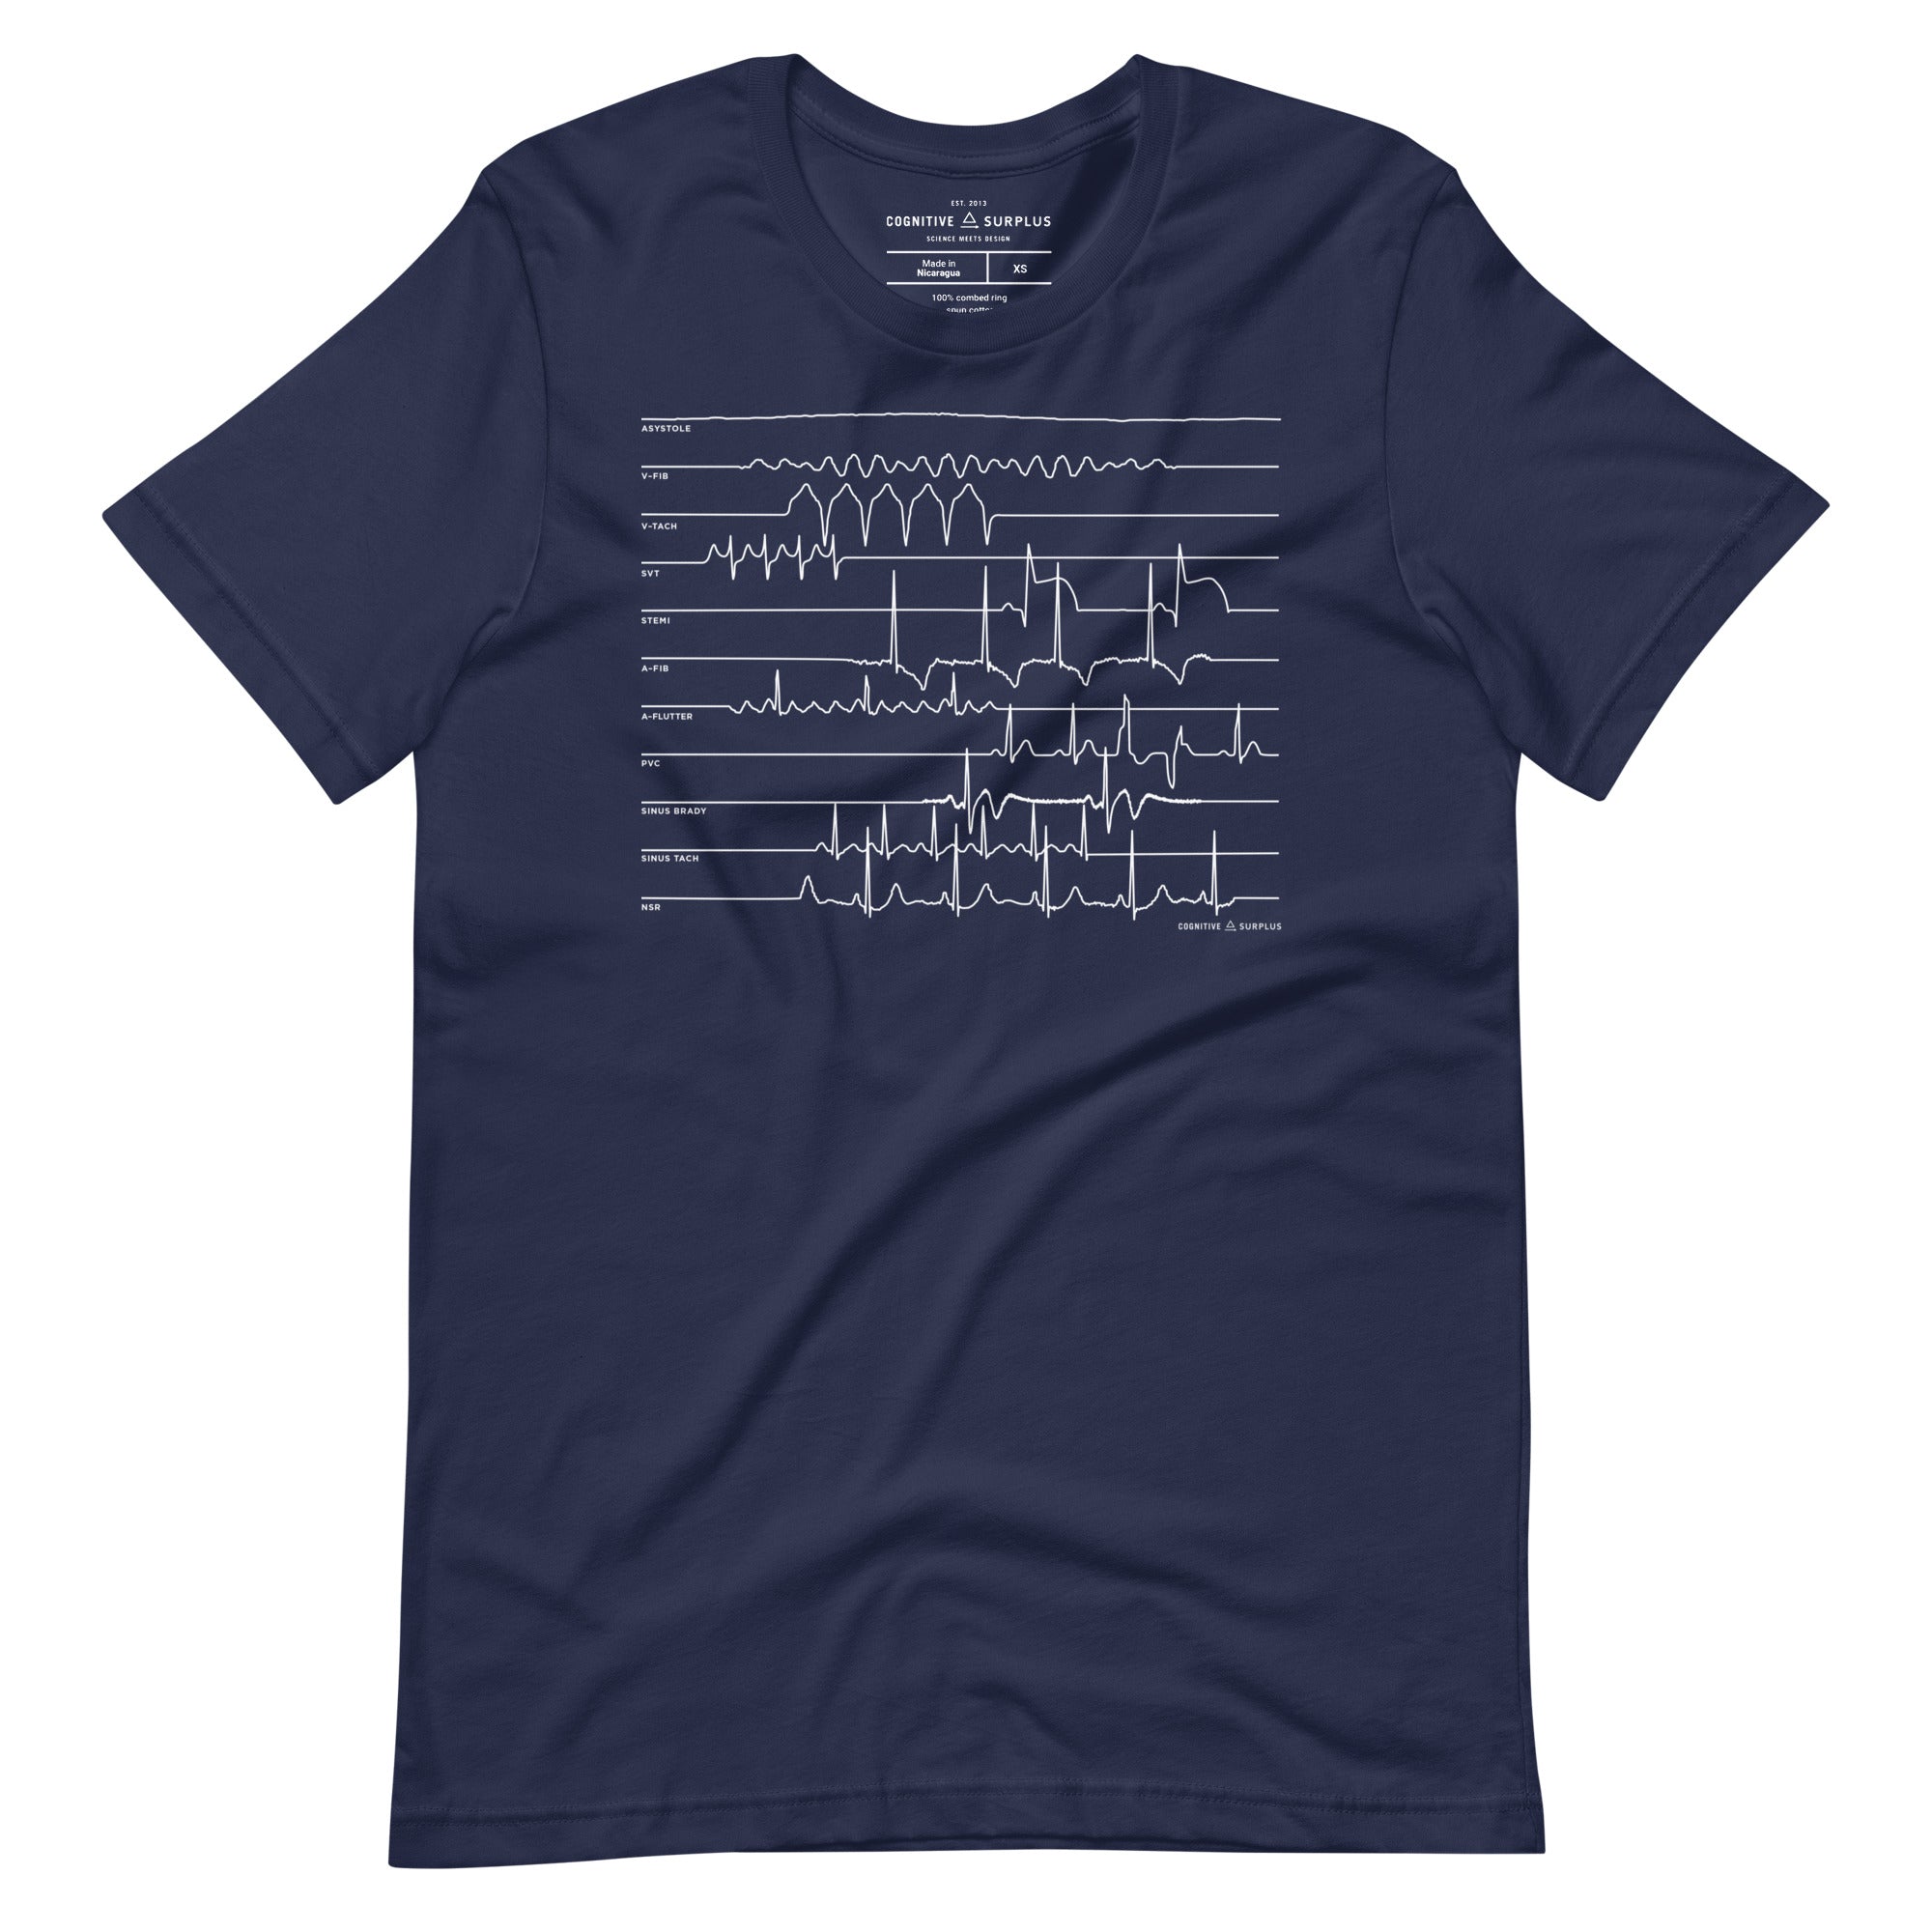 unisex-staple-t-shirt-navy-front-654a6b6ecbbb0.jpg